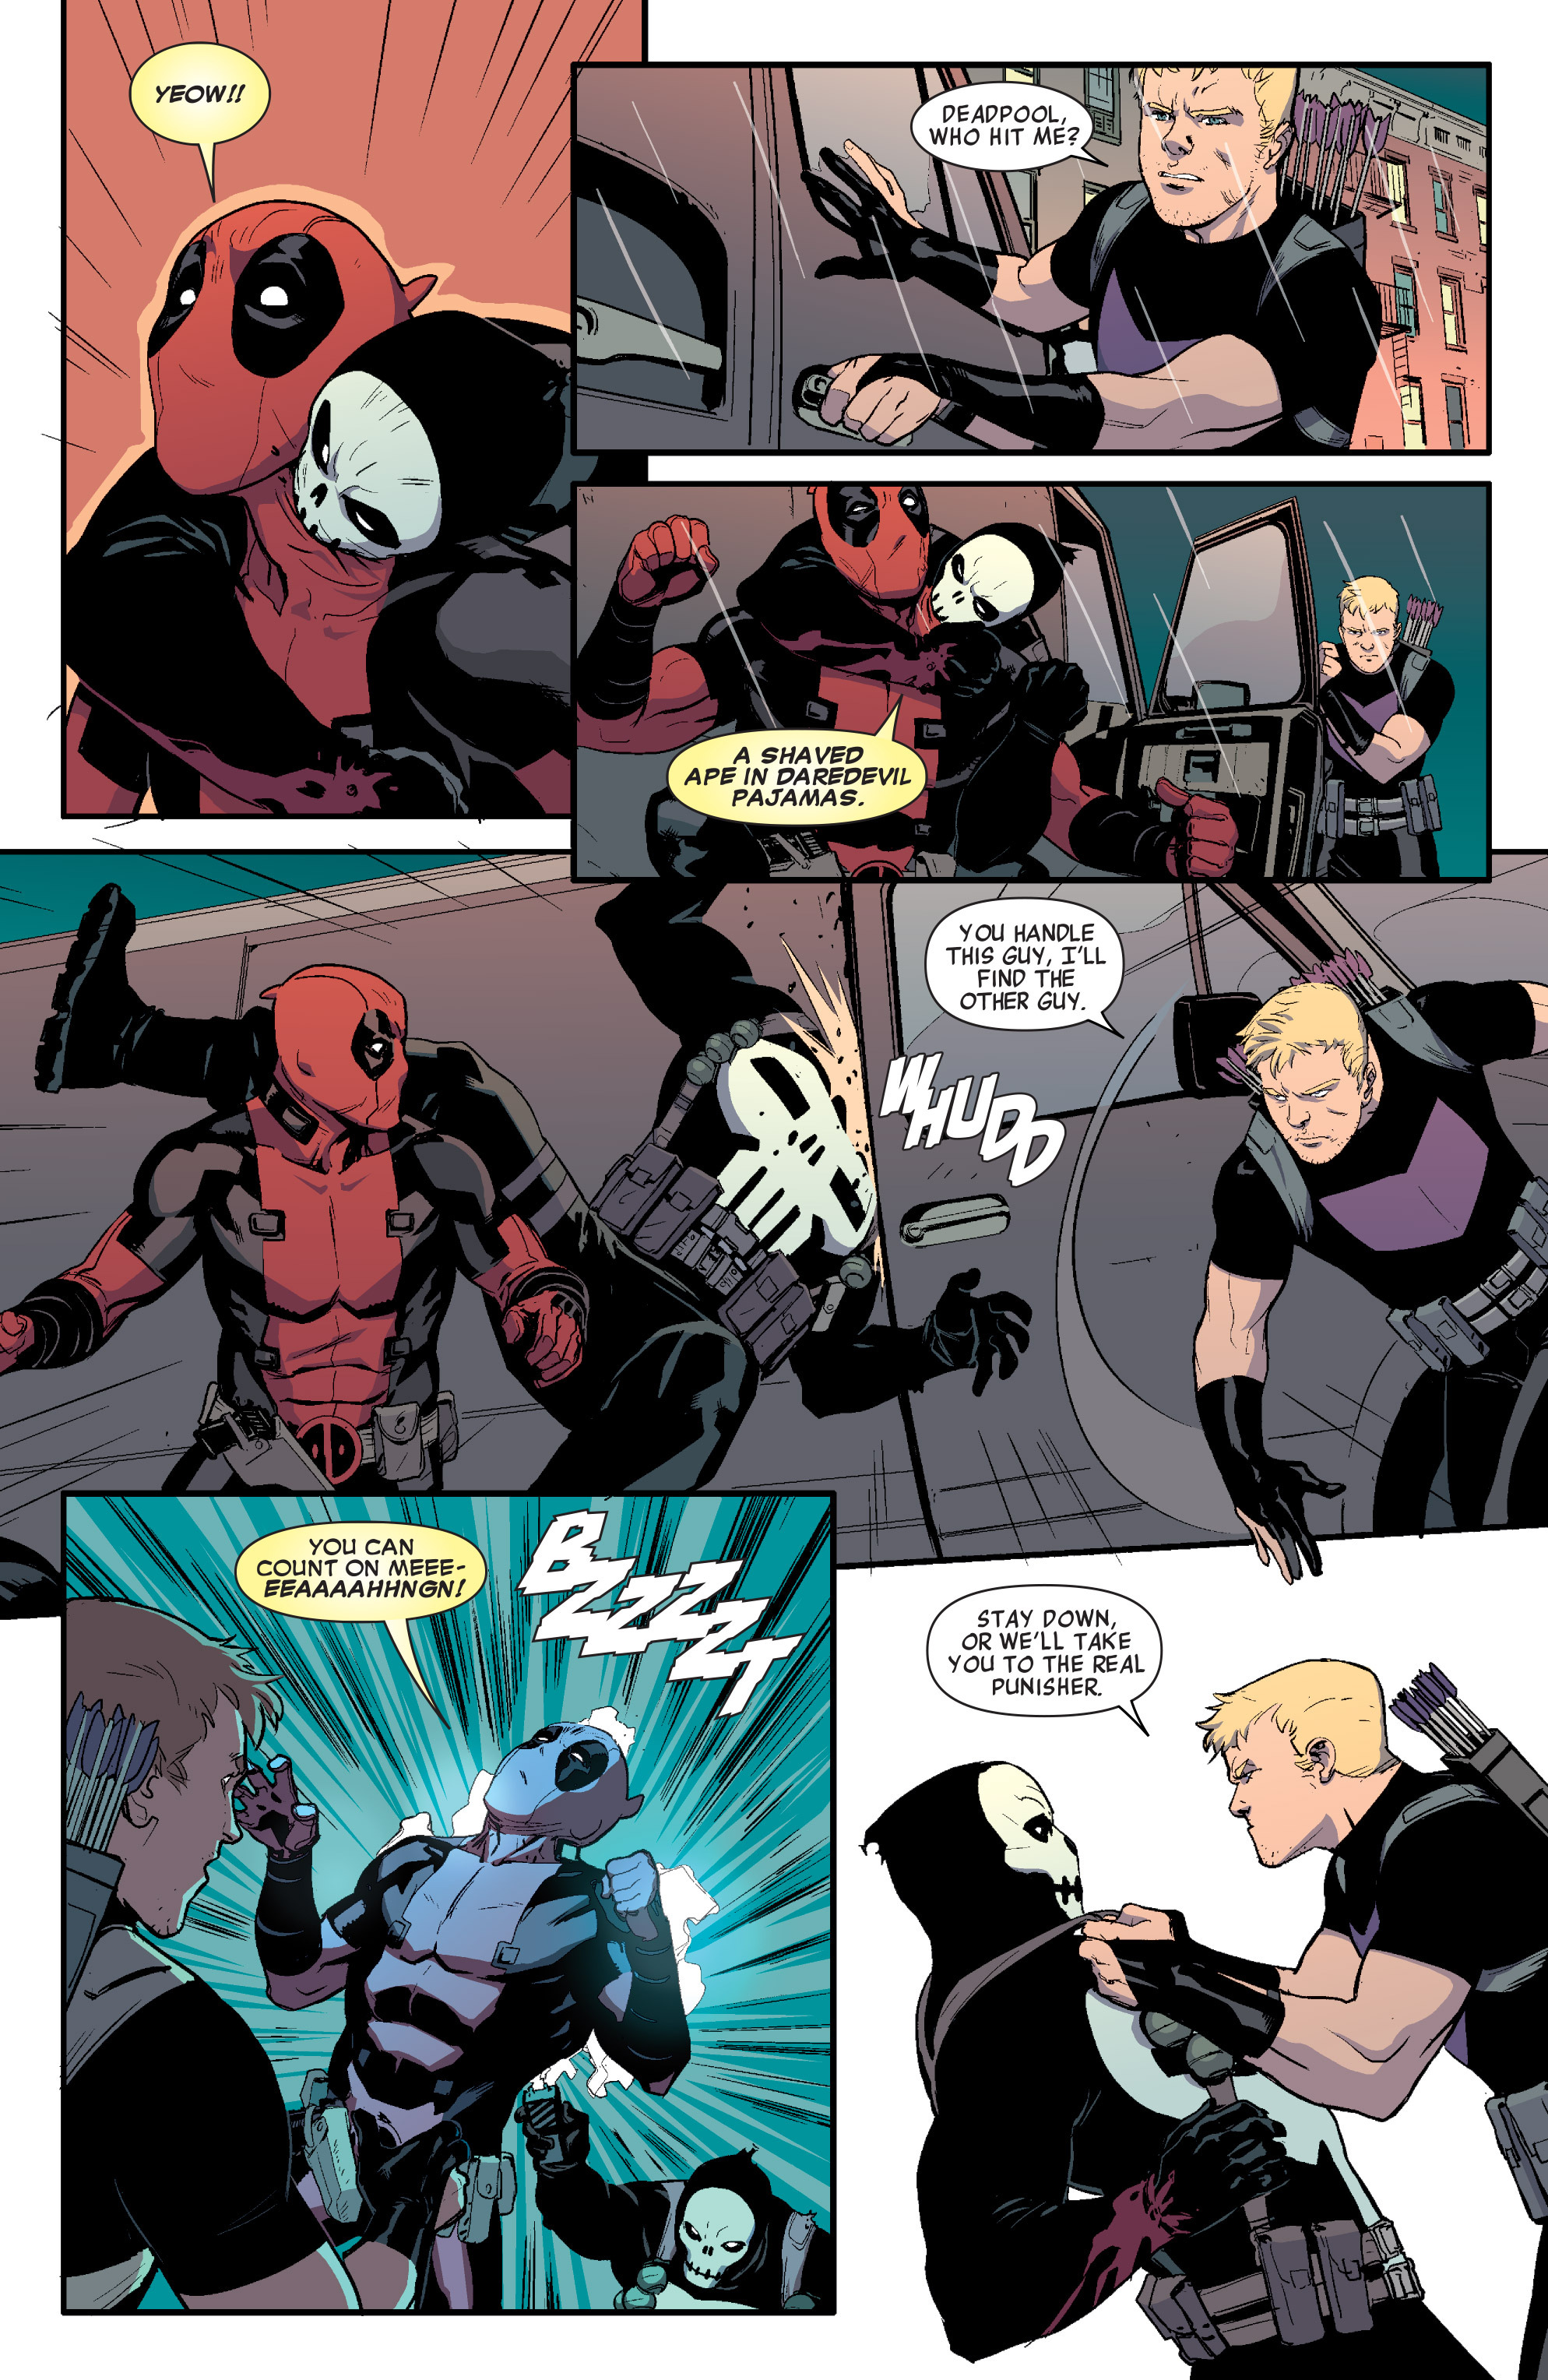 Read Online Hawkeye Vs Deadpool Comic Issue 0